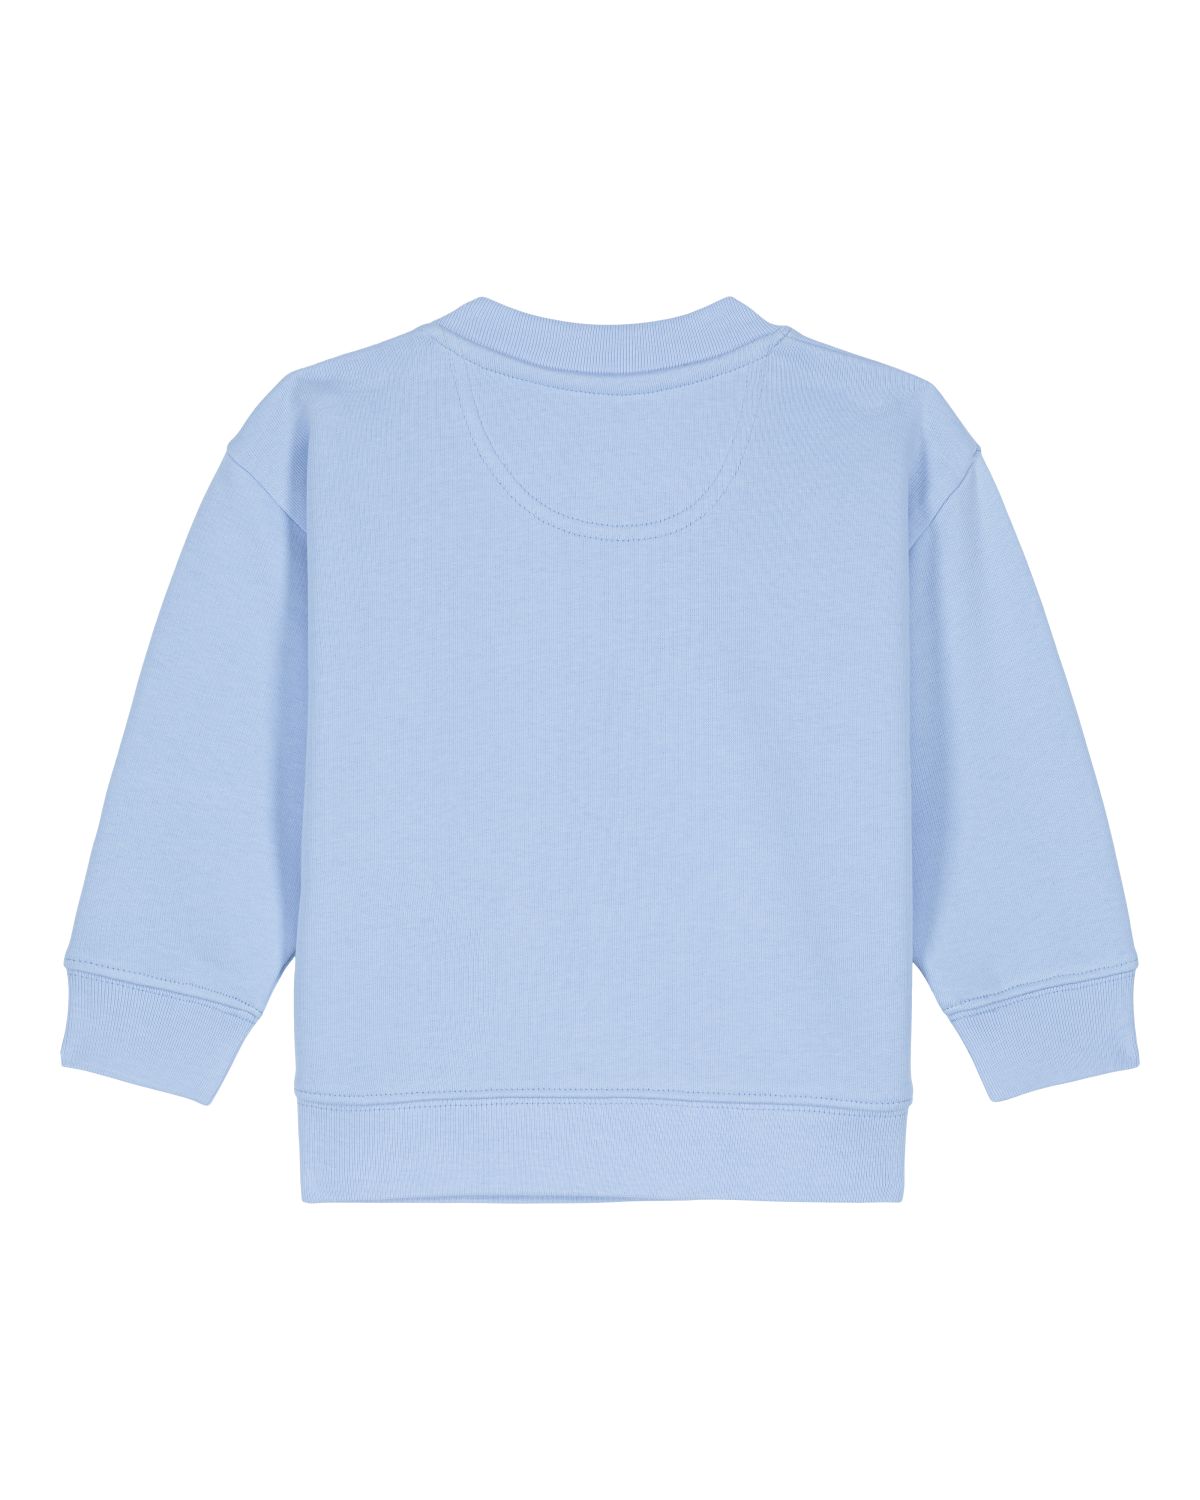 Langarm, Ärmel, Pullover, Sweatshirt, T-shirt